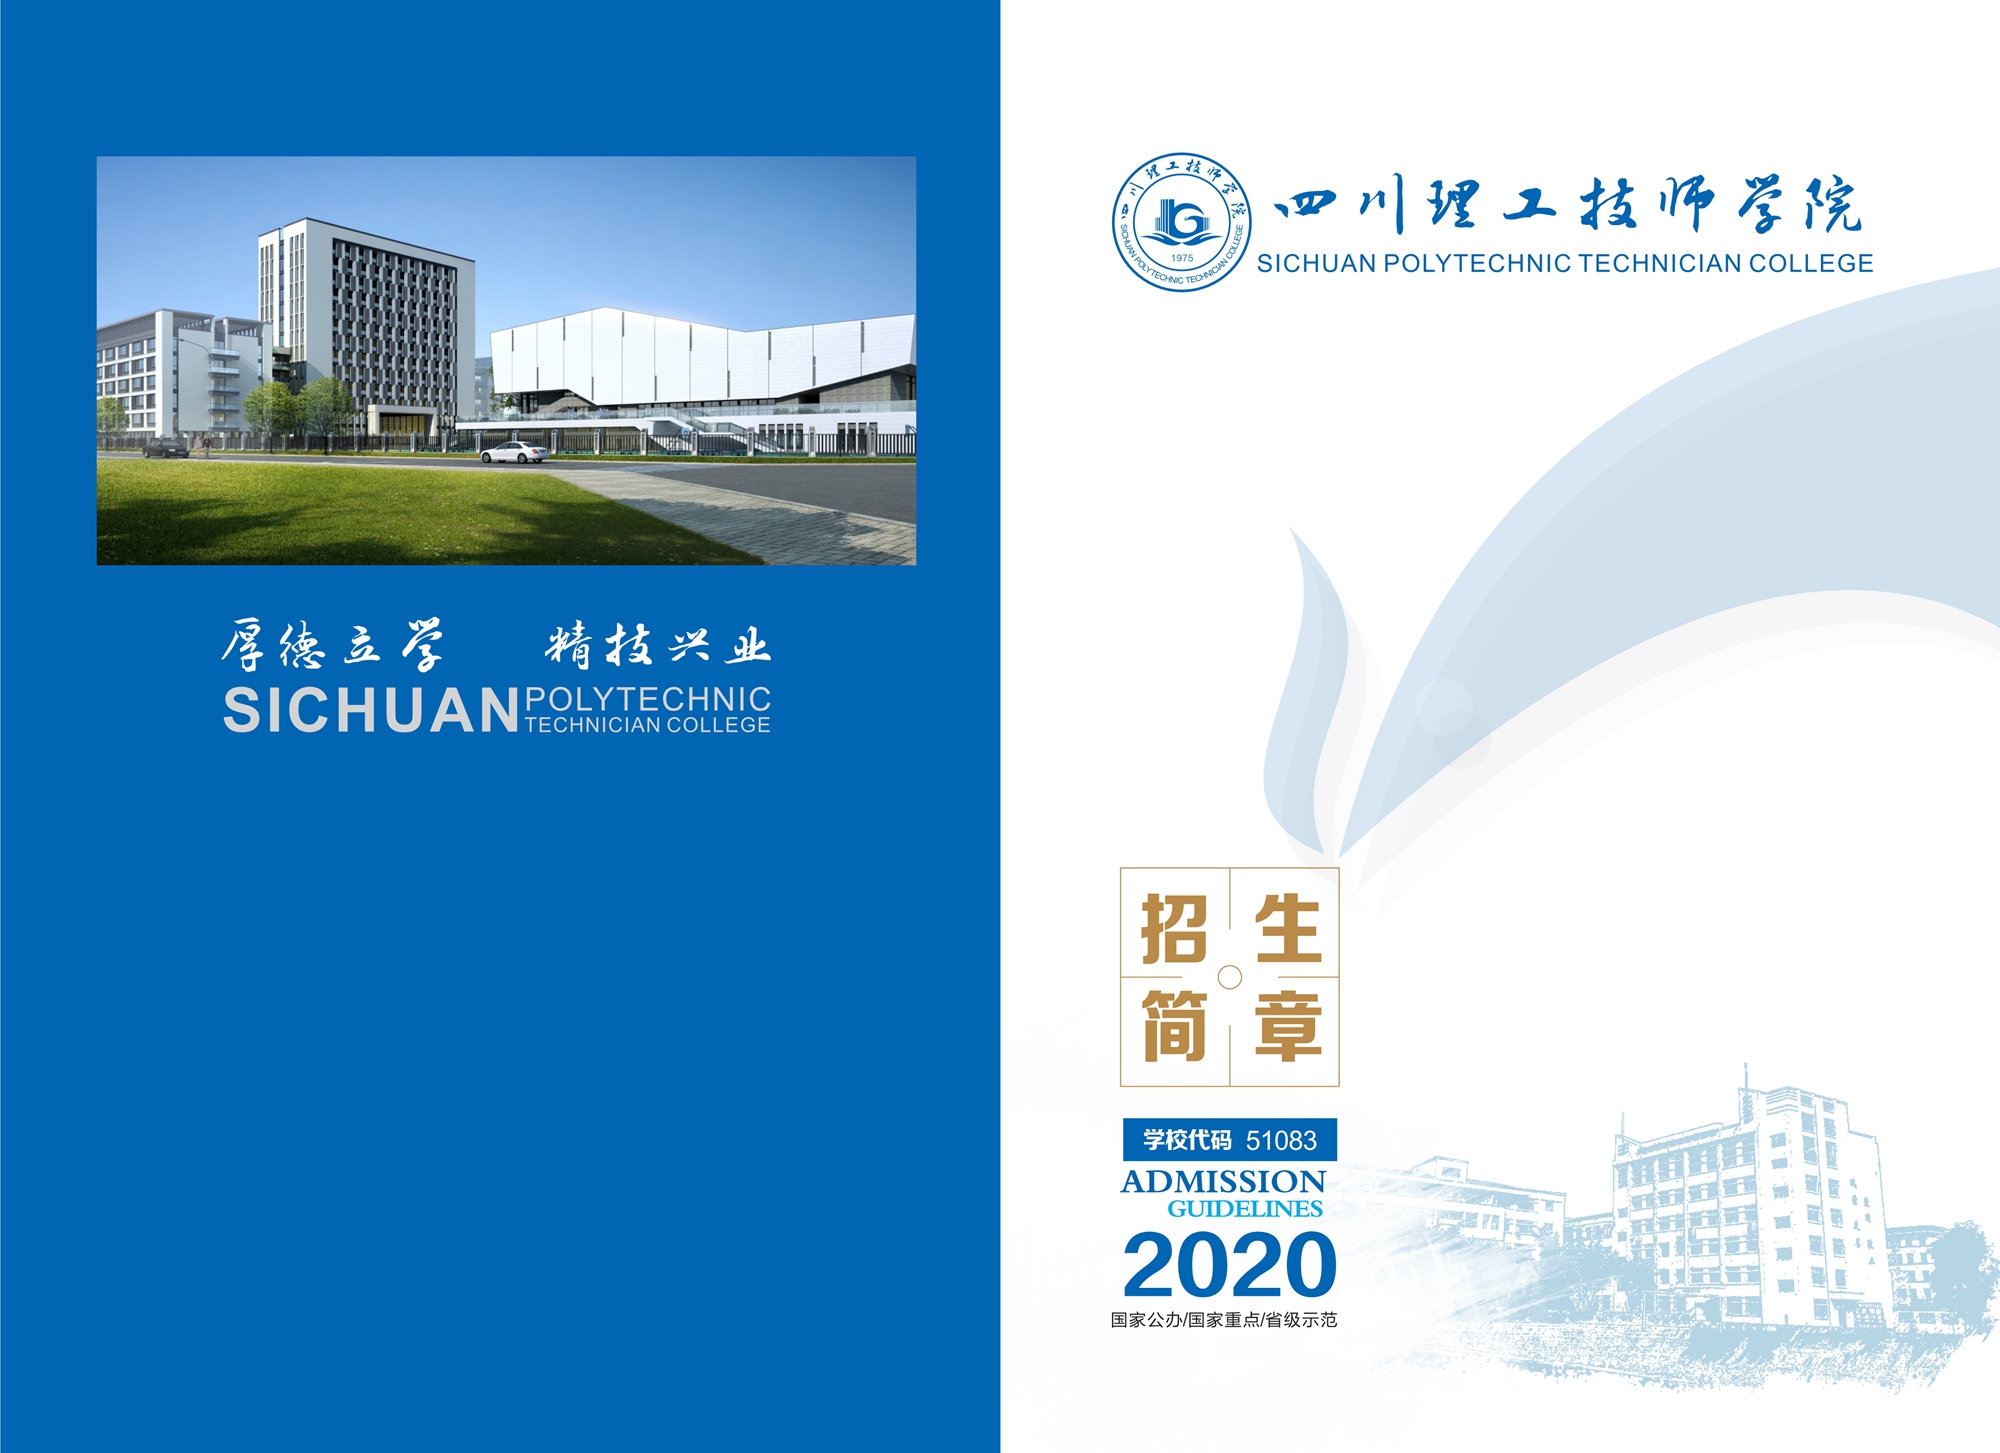 【招生指南画册】四川理工技师学院2020年报考指南|招生简章